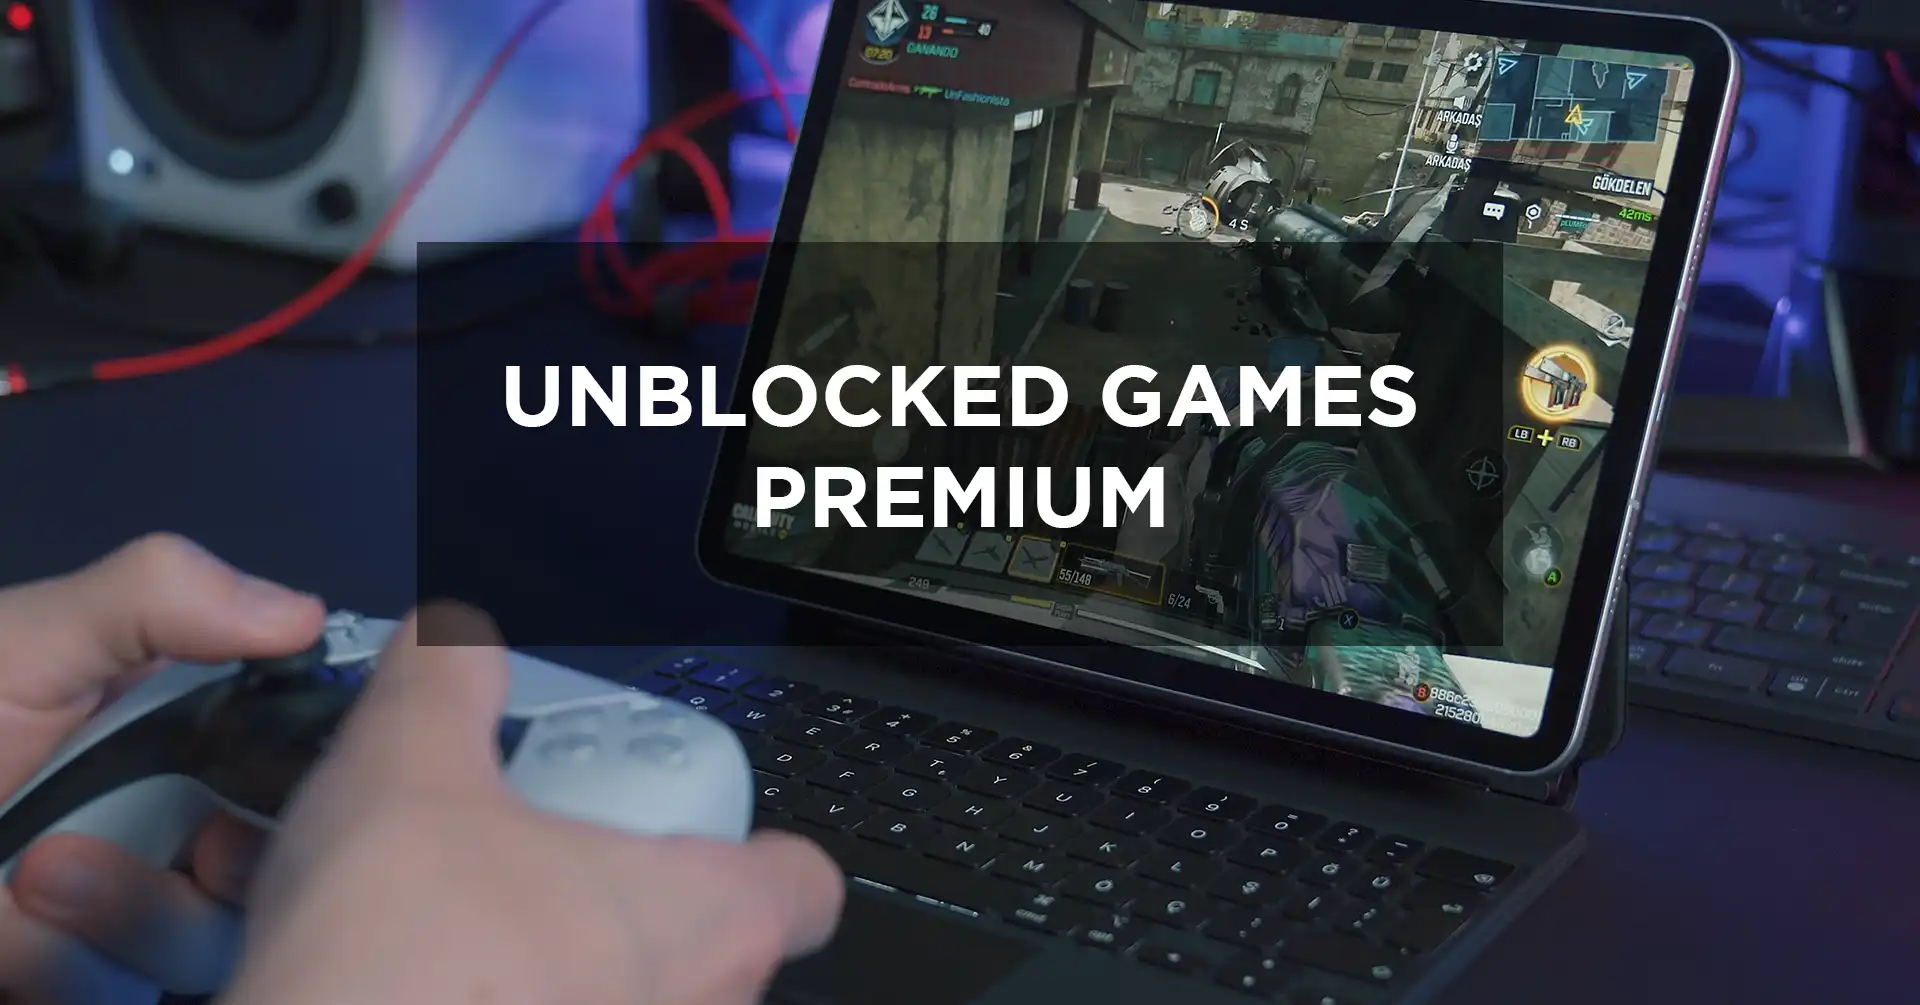 Unblocked games premium